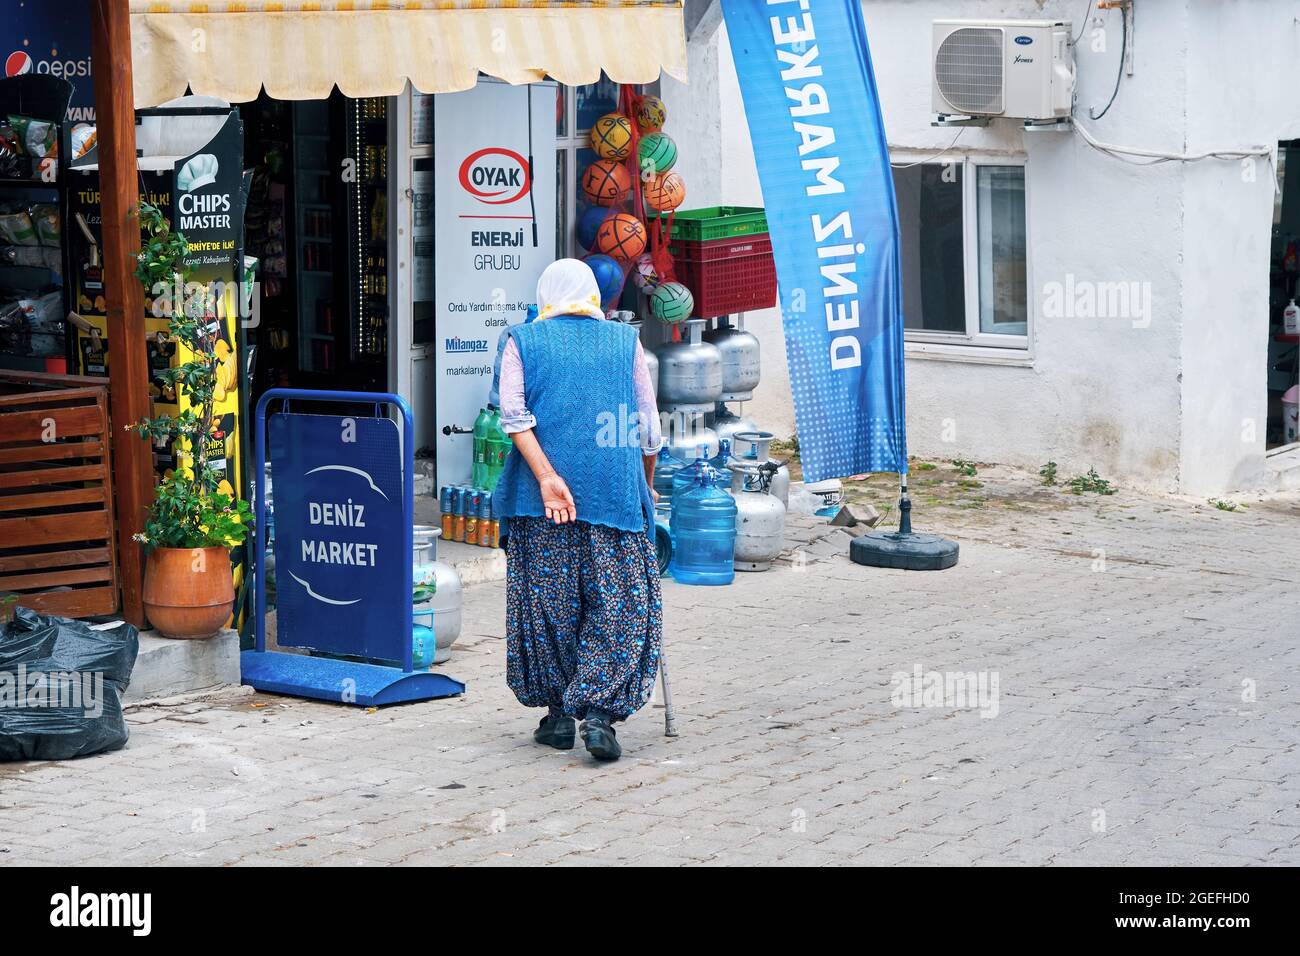 Urla, Izmir, Turquie - juin 2021 : femme âgée marchant avec sa canne vers une épicerie rurale dans le village de Bademler, Urla, Izmir, Turquie. Banque D'Images